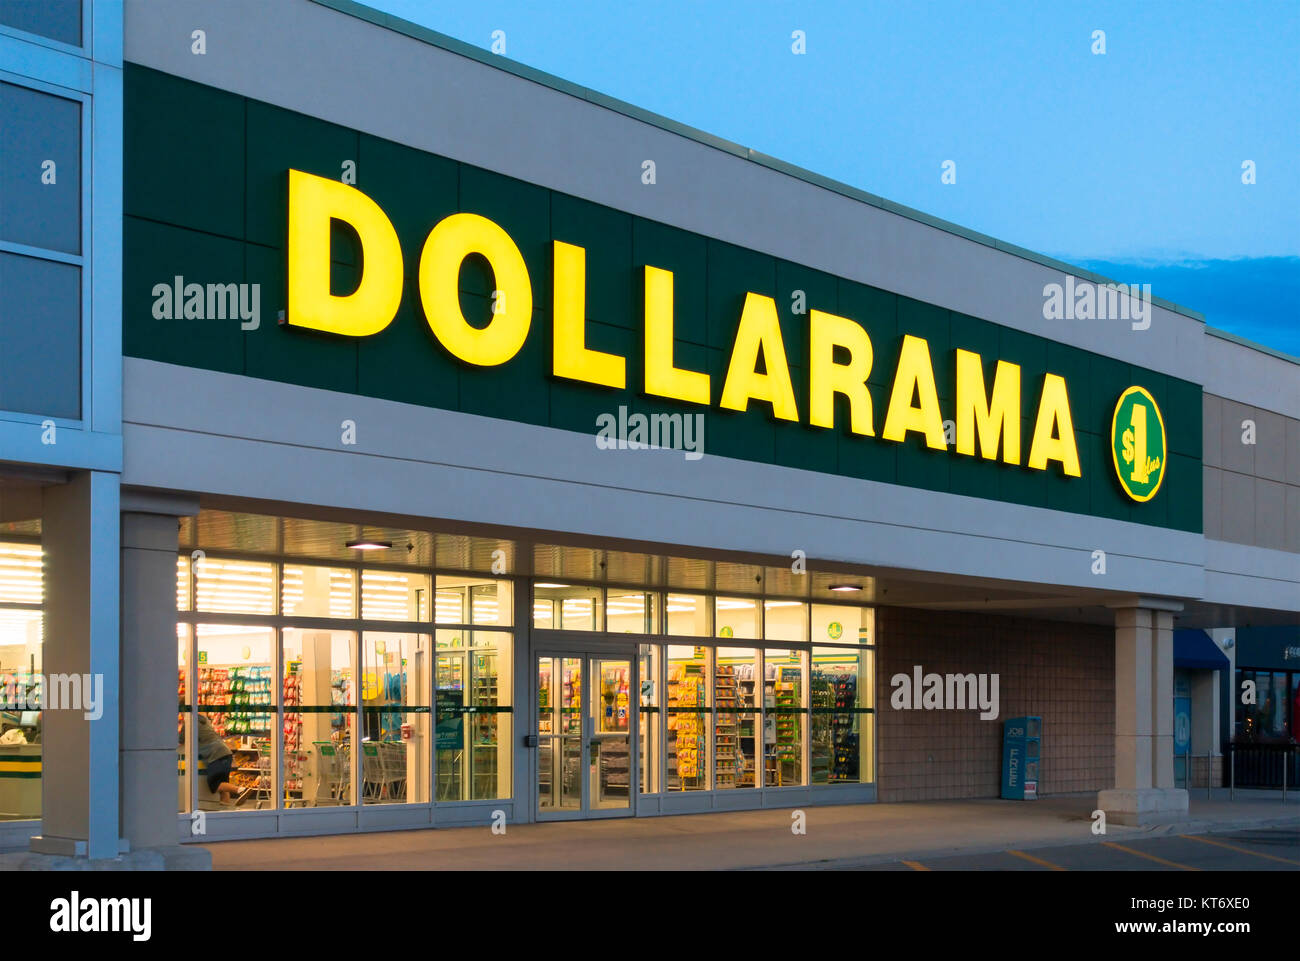 A Dollarama Inc. sign and storefront illuminated at dusk. Stock Photo